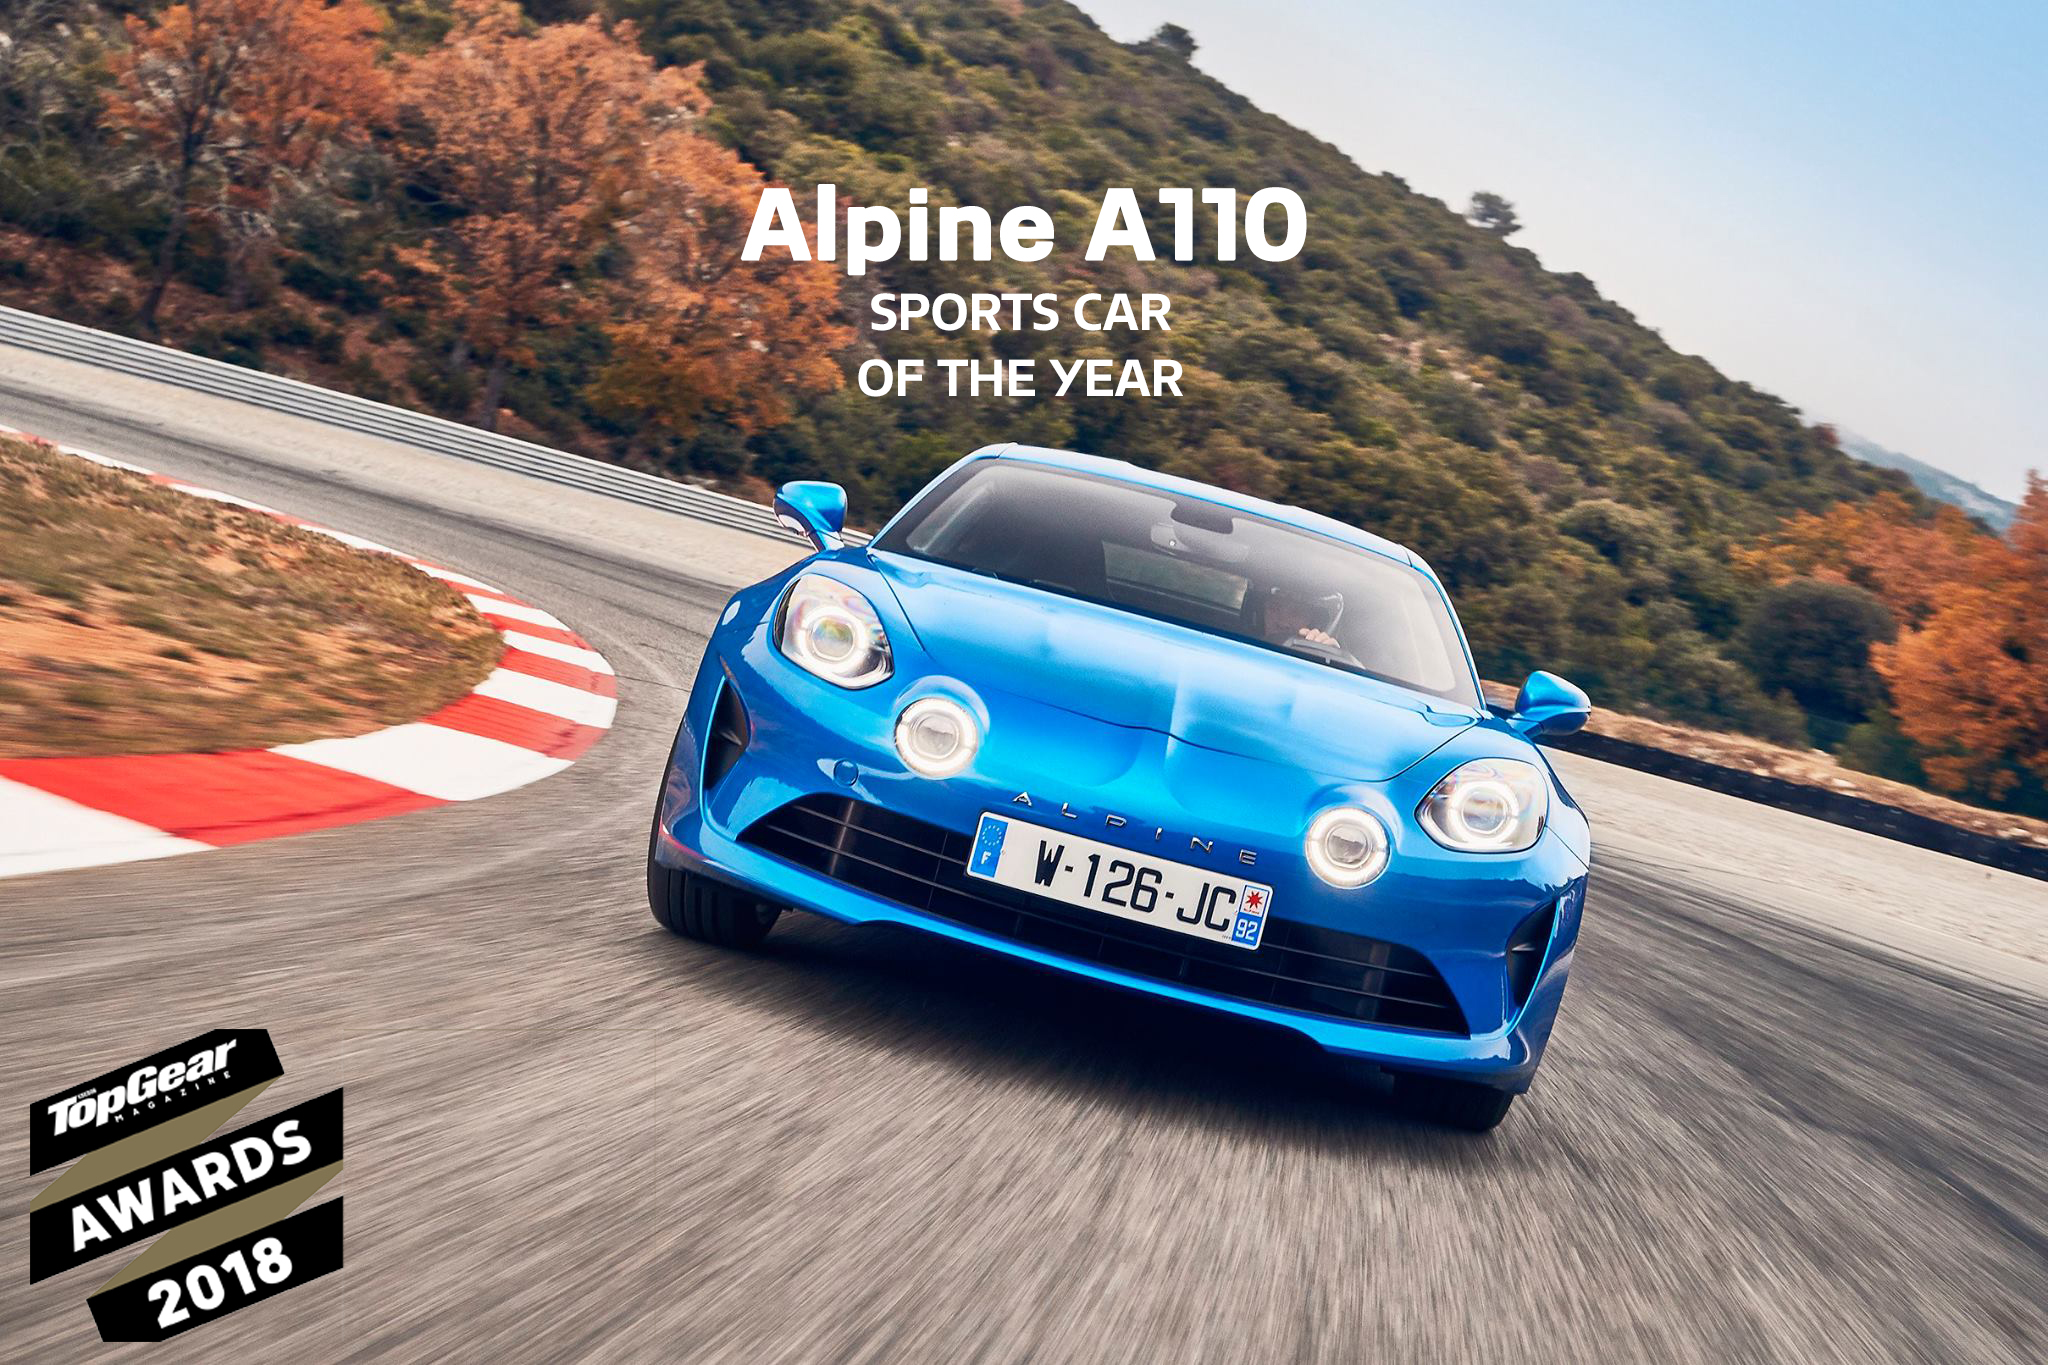 Alpine A110, semplicemente la Sportiva dell’Anno